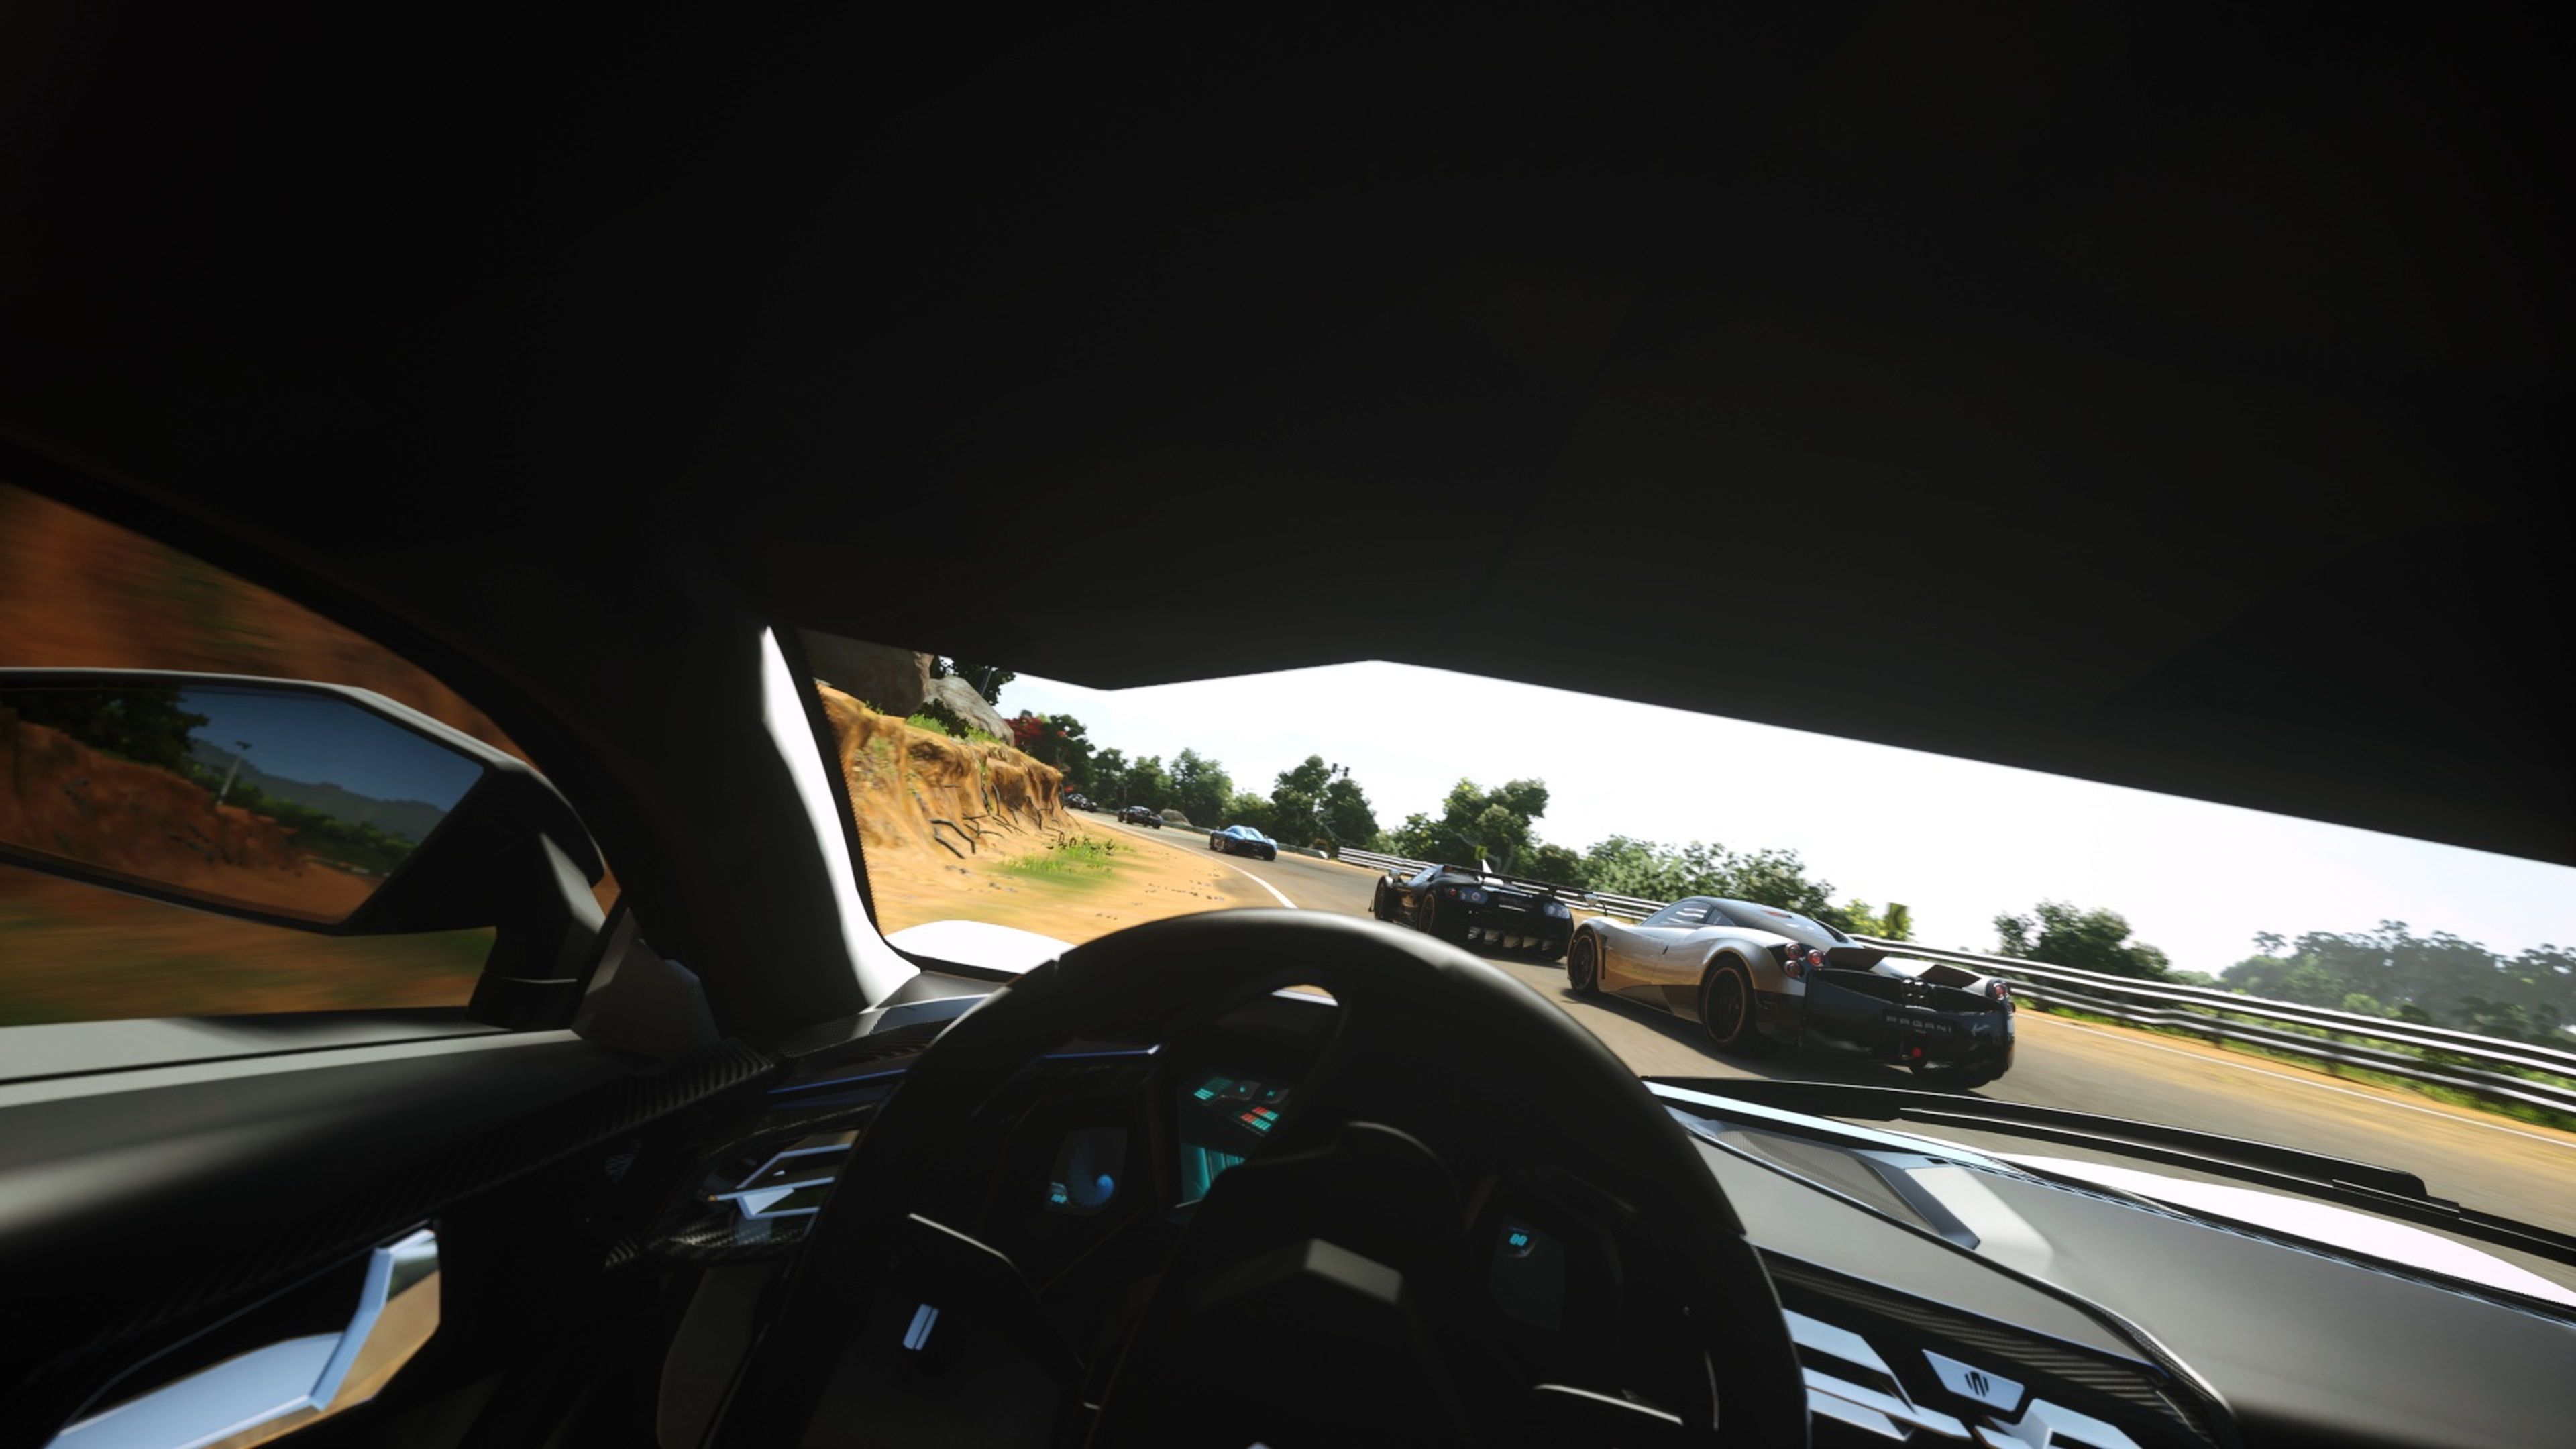 Driveclub VR sacrificará en parte el espectacular despliegue gráfico visto en el juego original, aunque una vez pisemos el acelerador, esa pérdida de detalle se compensará con un nivel de intensidad de las carreras muy superior.